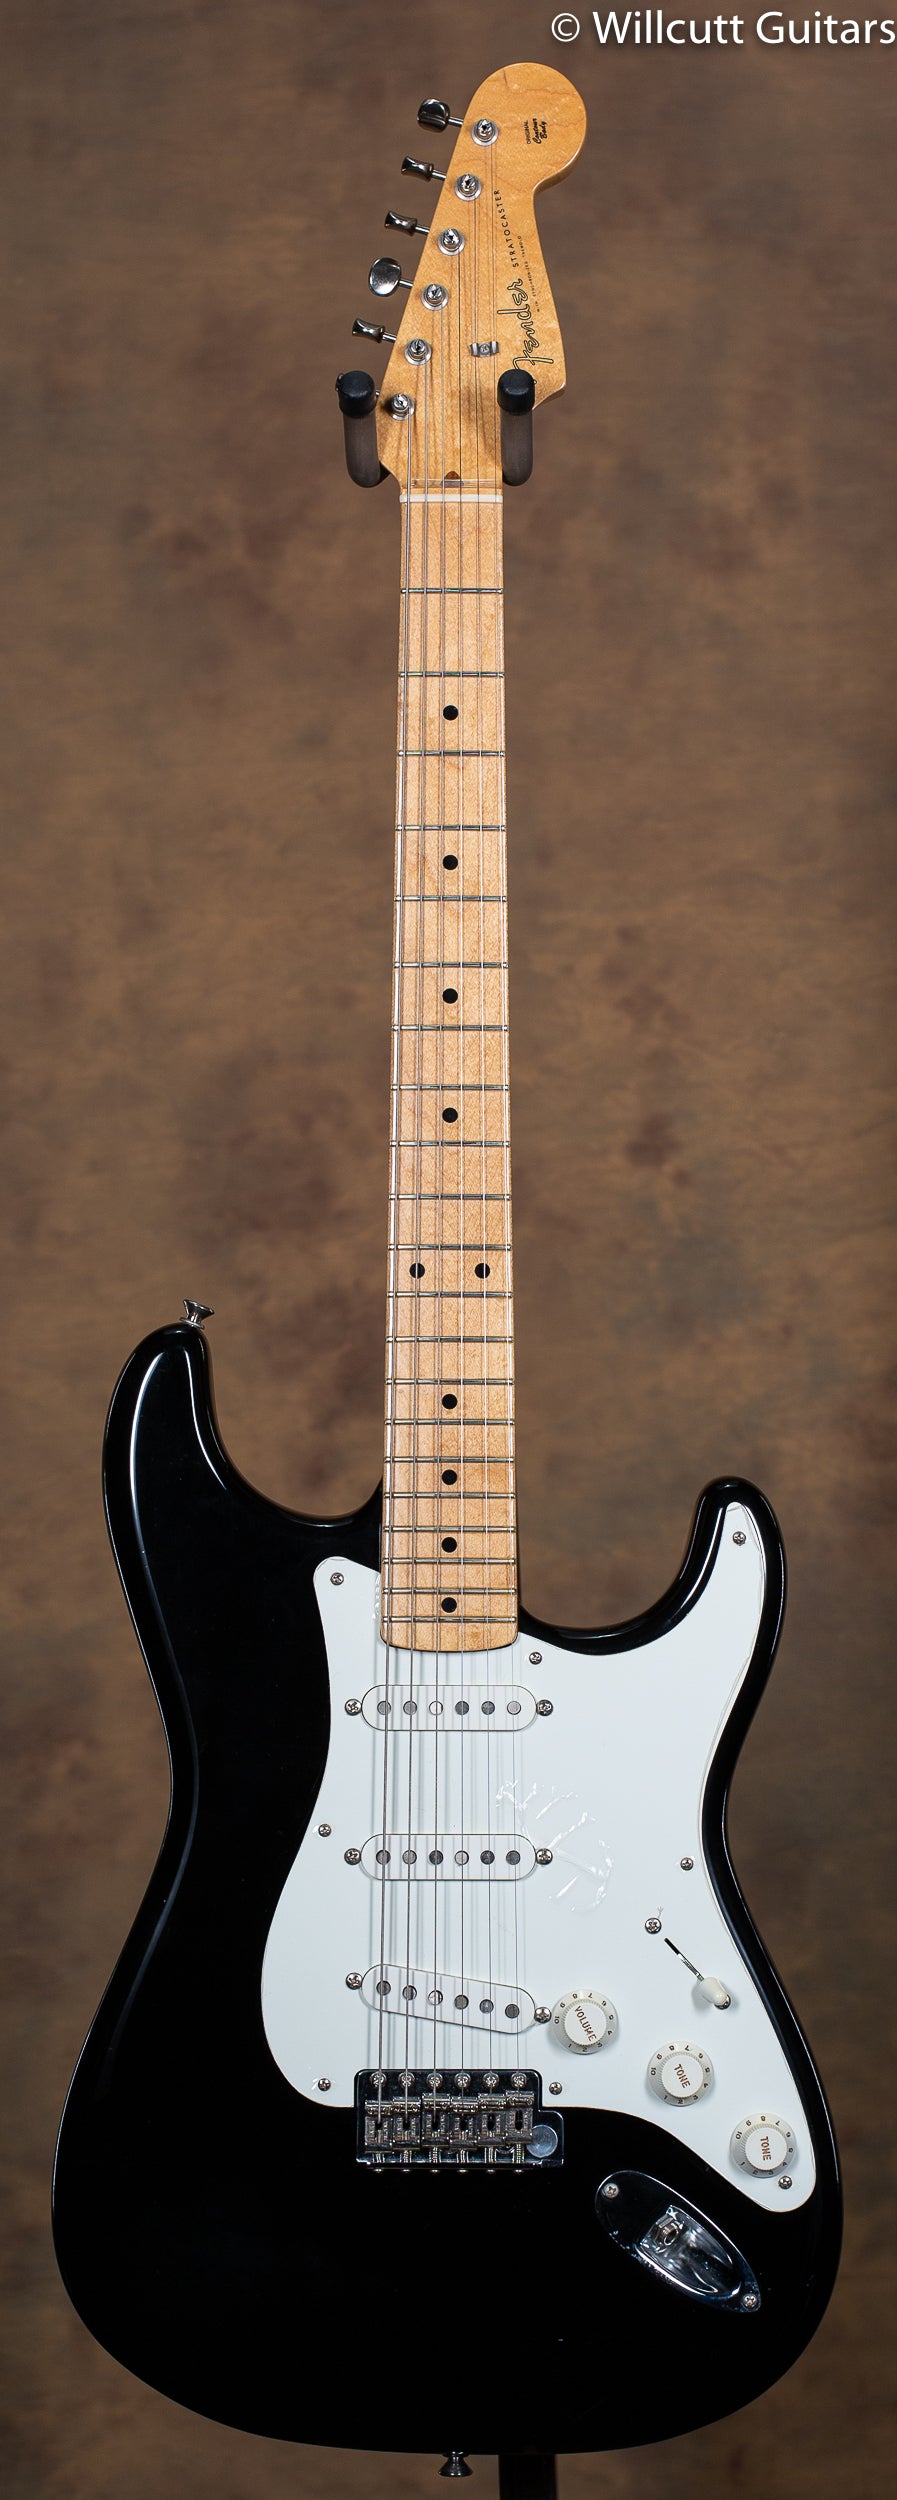 Fender American Vintage '56 Stratocaster Black - Willcutt Guitars